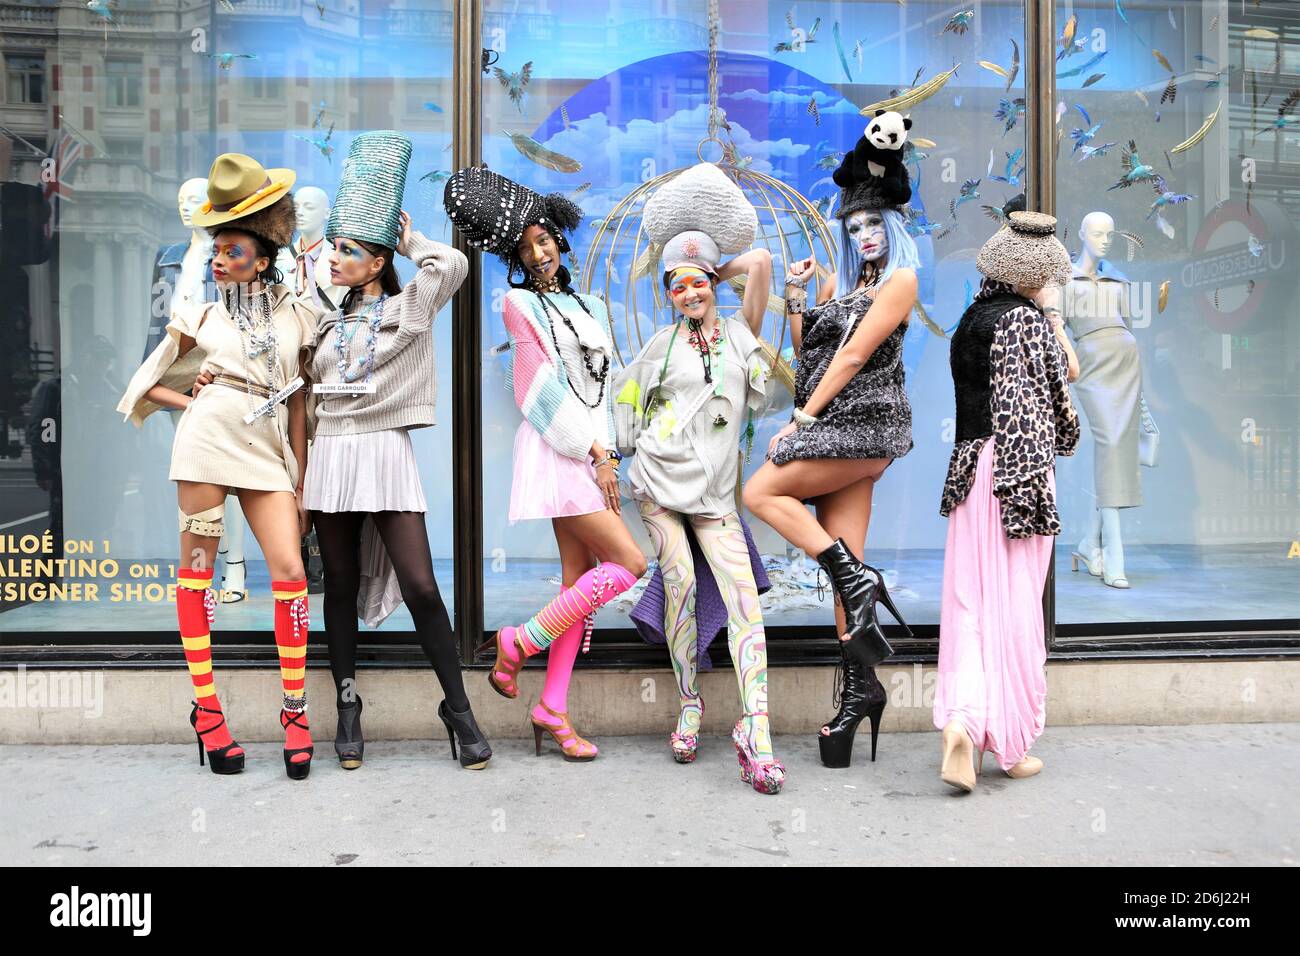 Des modèles mettent en valeur la collection Pierre Garroudi lors du spectacle de mode flash mob à Knightsbridge. Banque D'Images